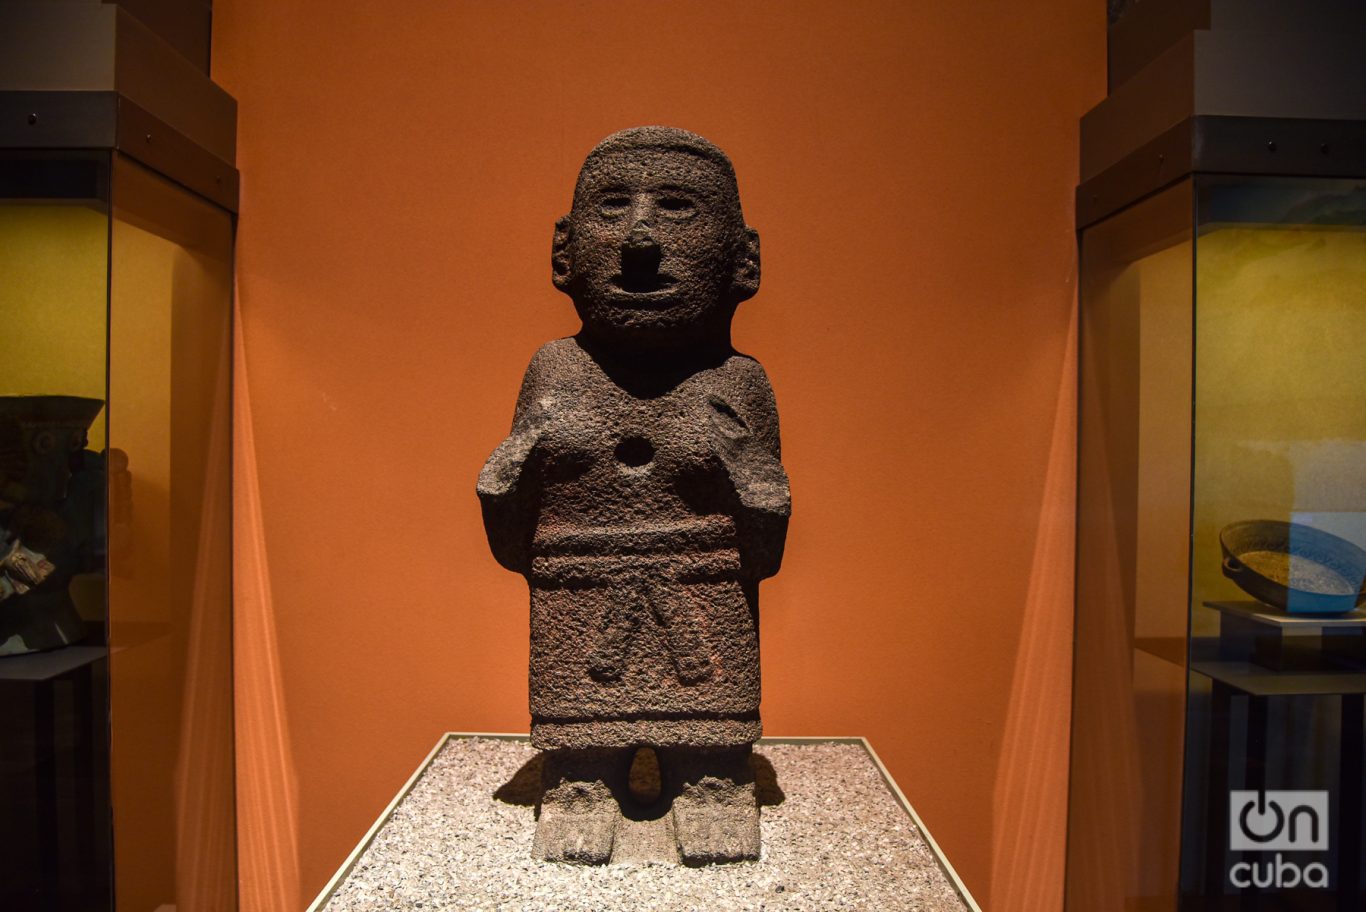 Pieza arqueológica expuesta en una de las salas del Museo Nacional de Antropología de México. Foto: Kaloian.